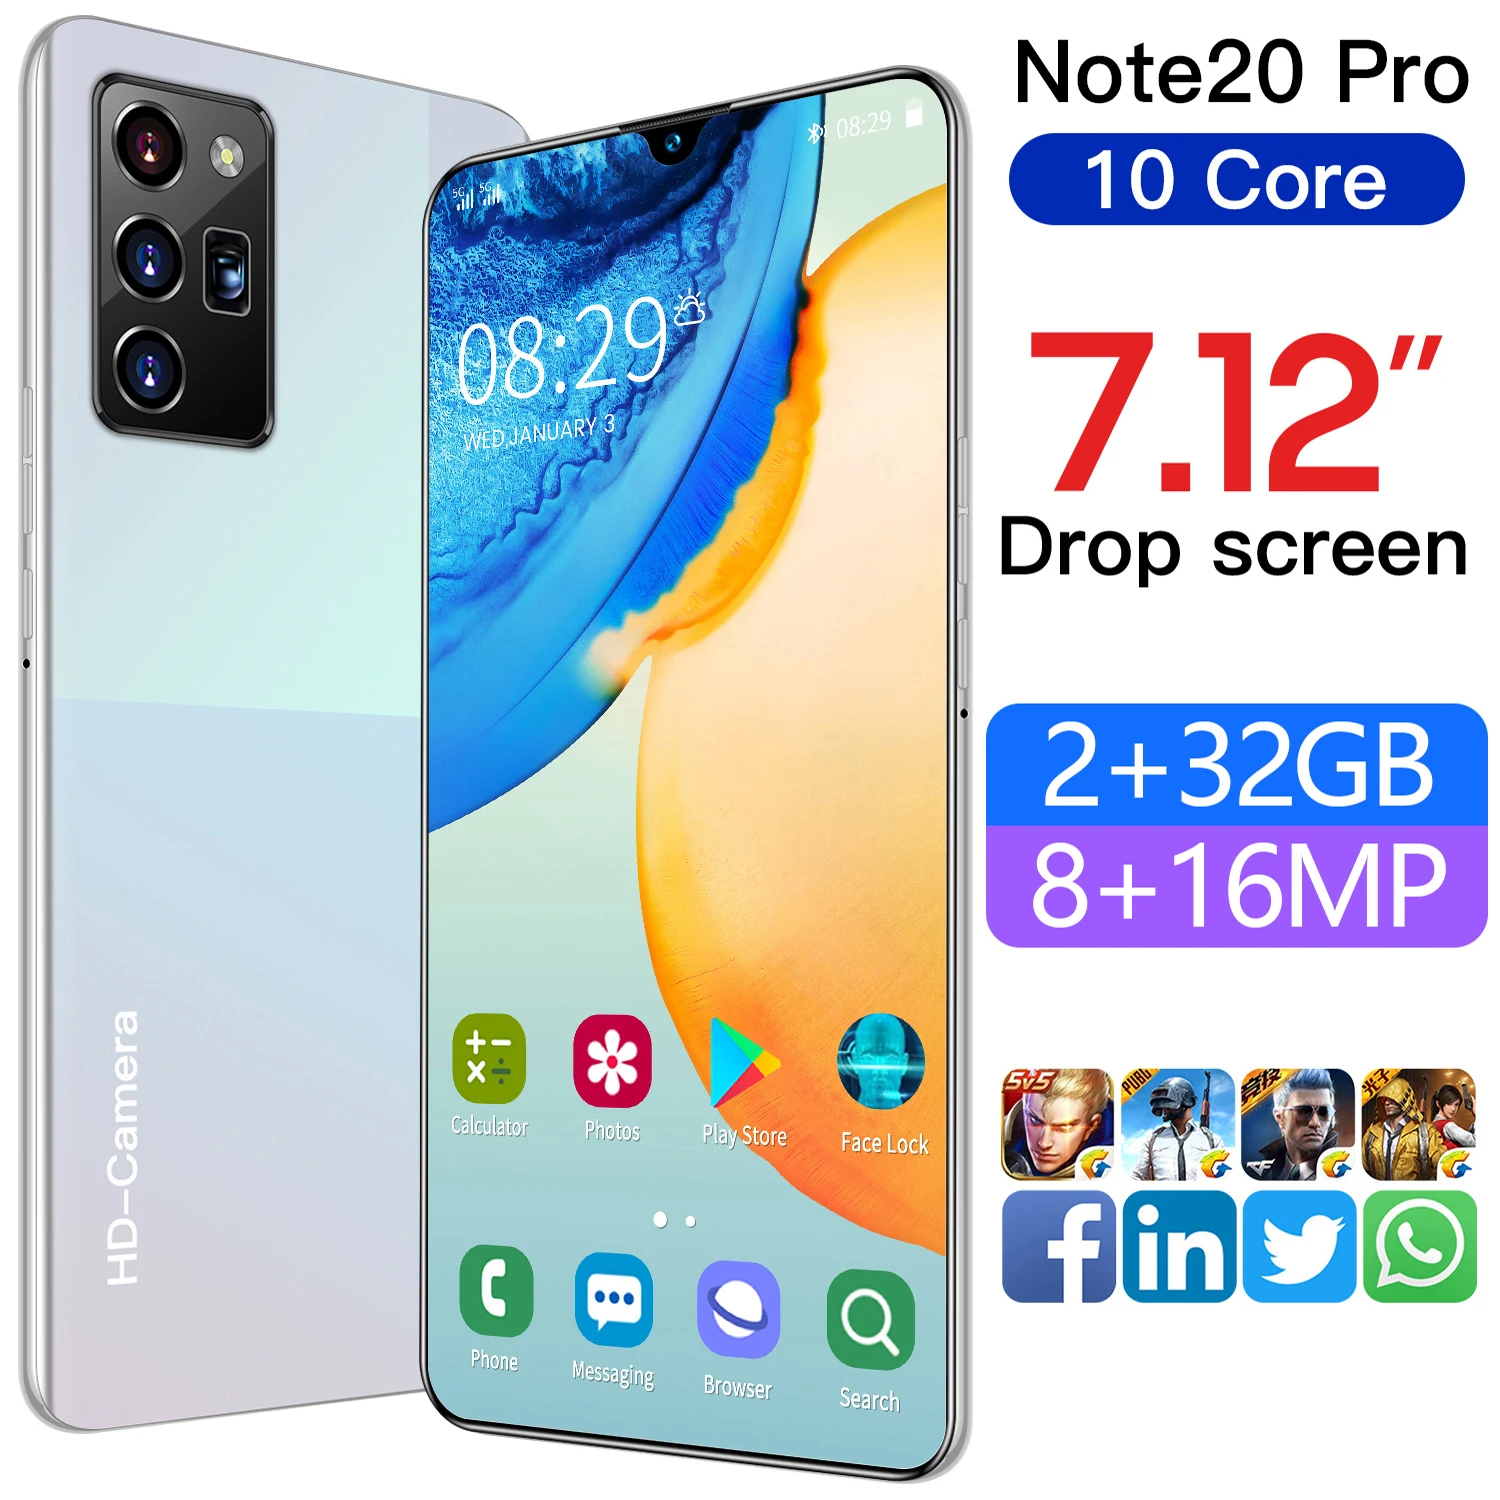 Фото Одежда больших размеров Размеры 7 12 Note20 pro Мобильный телефон Android - купить